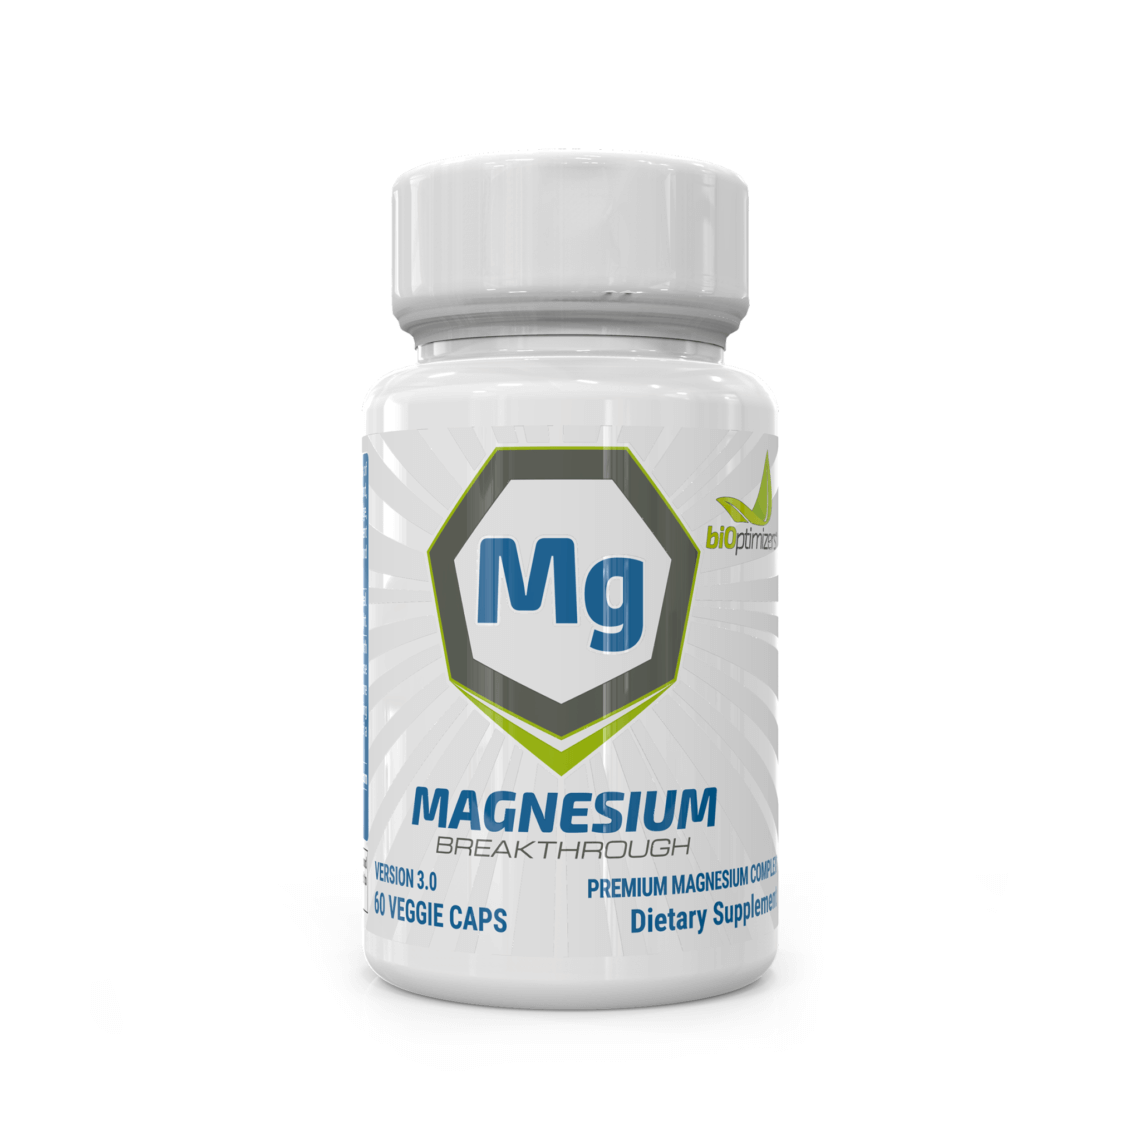 Magnesium Breakthrough Promo Code - Natural Calm Magnesium Supplement